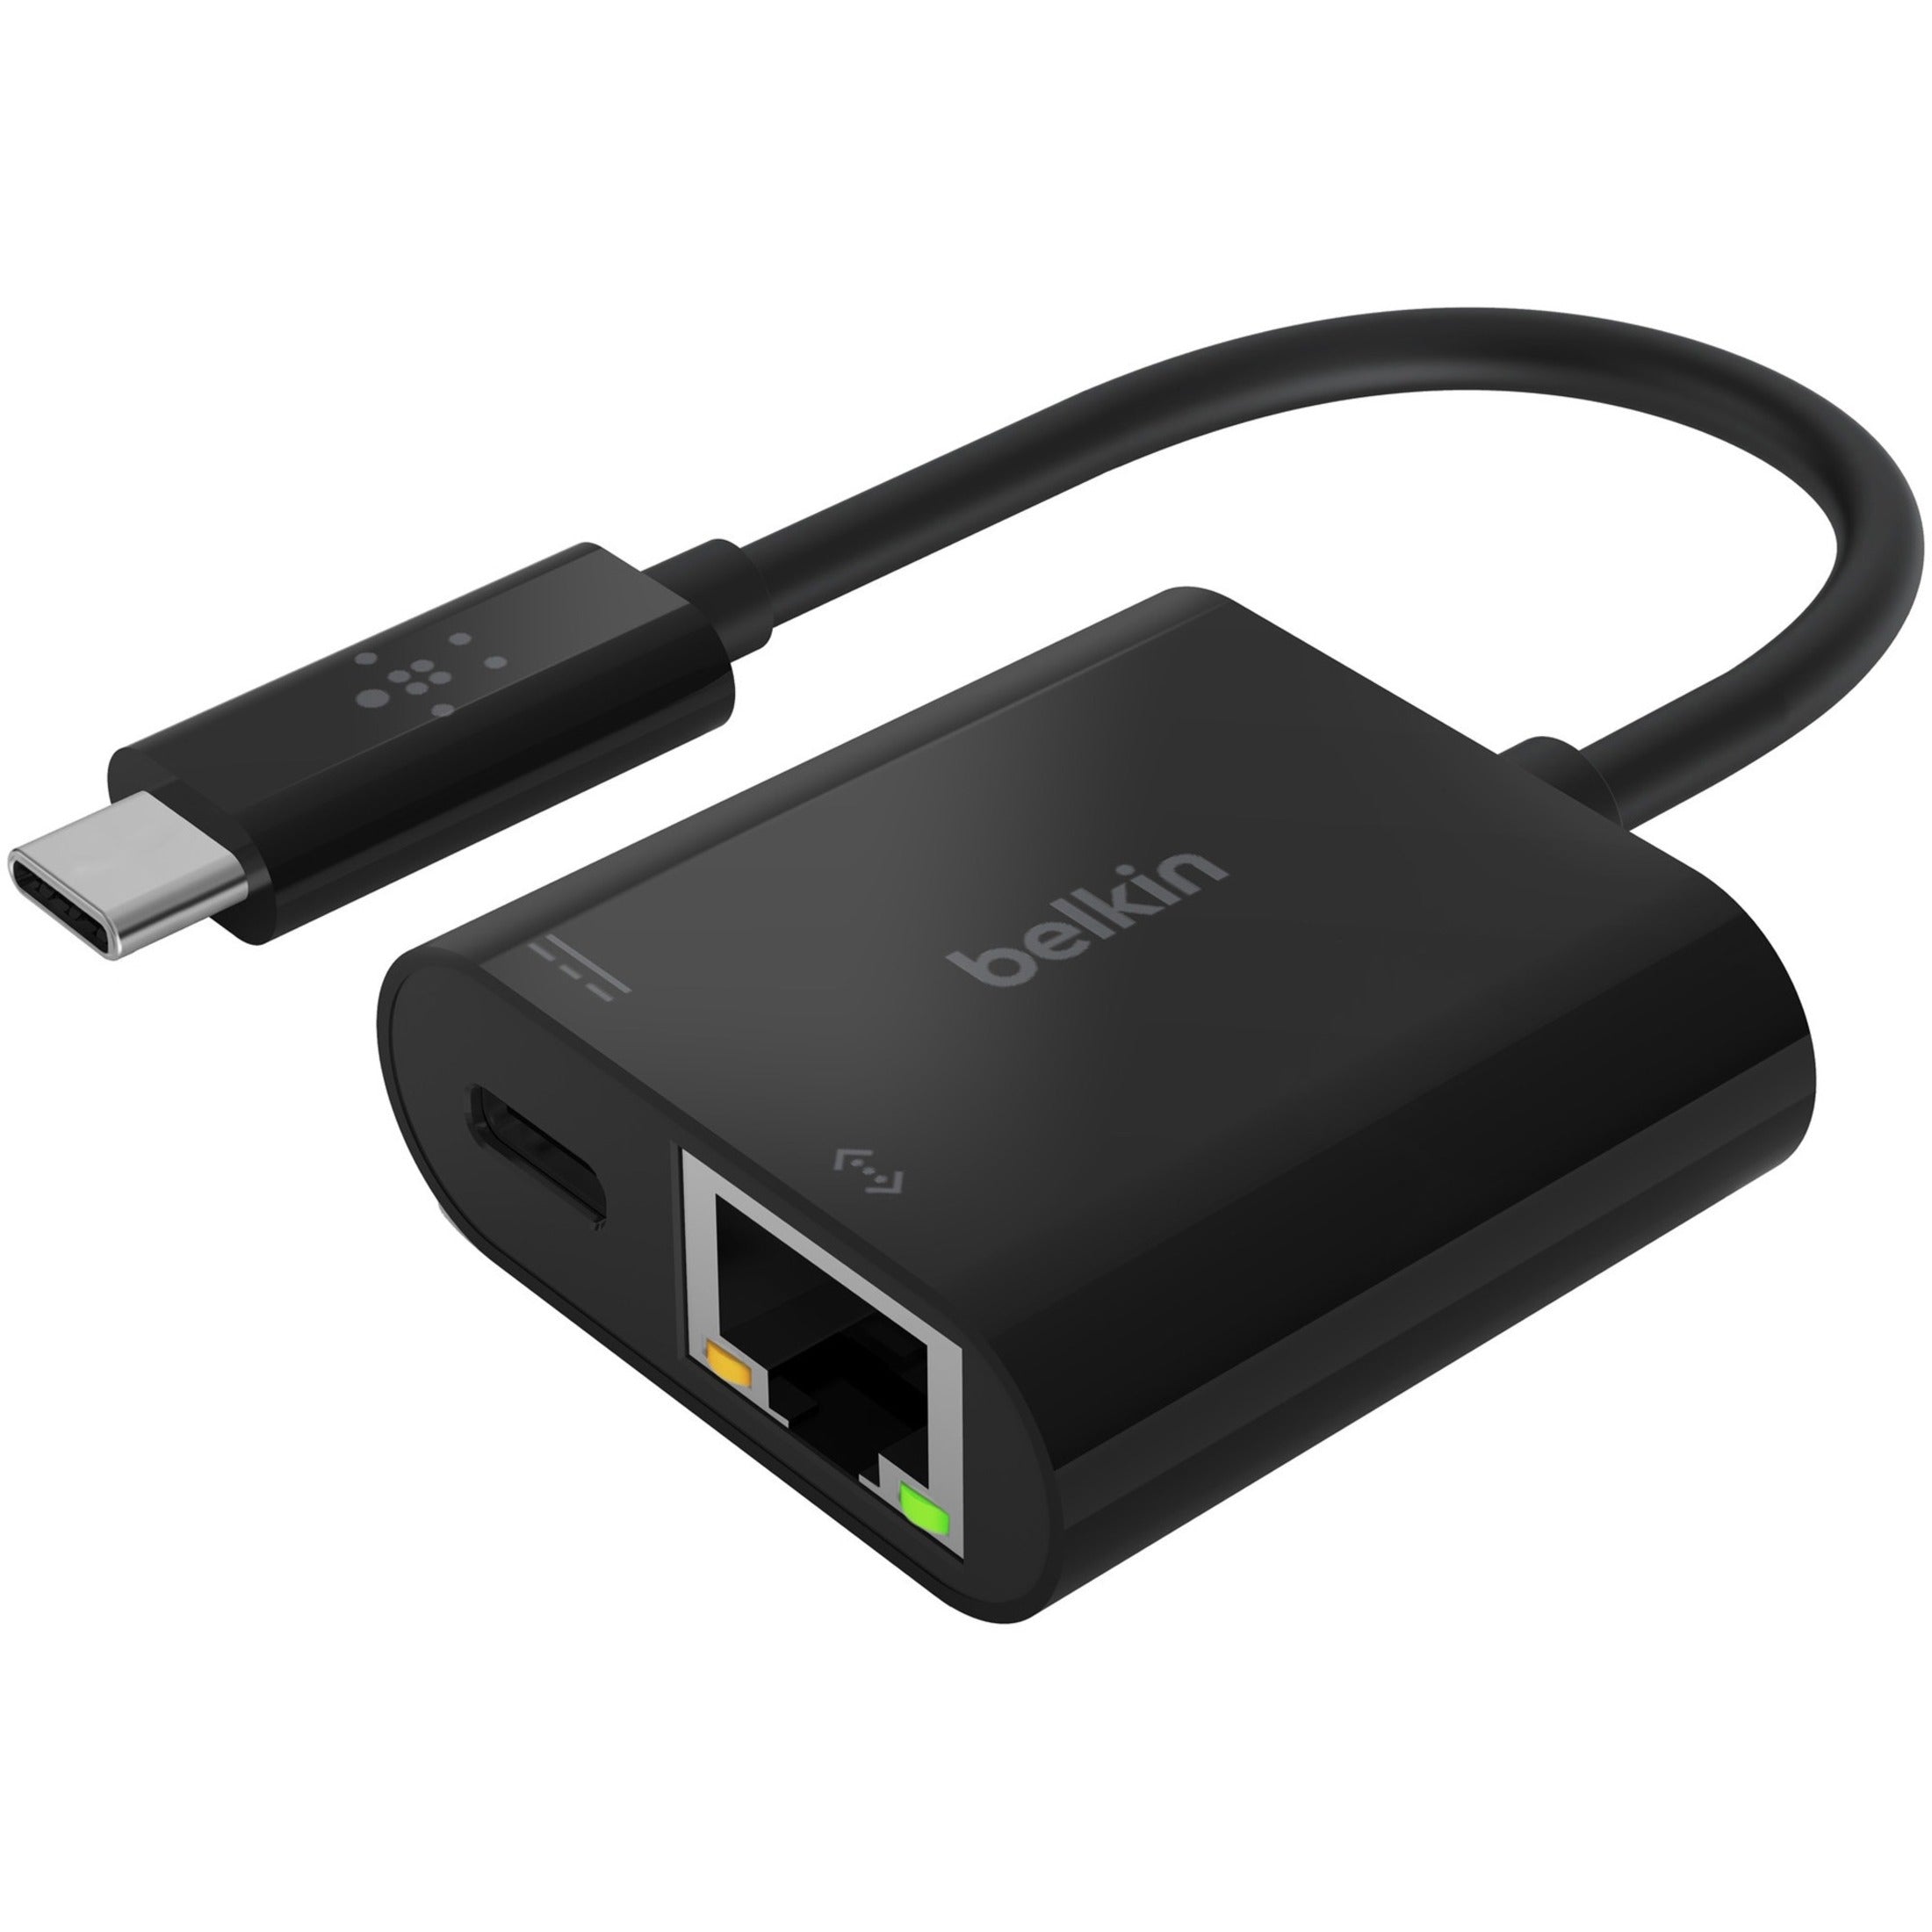 Belkin INC001BK-BL USB-C to Ethernet + Charge Adapter, Gigabit Ethernet Card